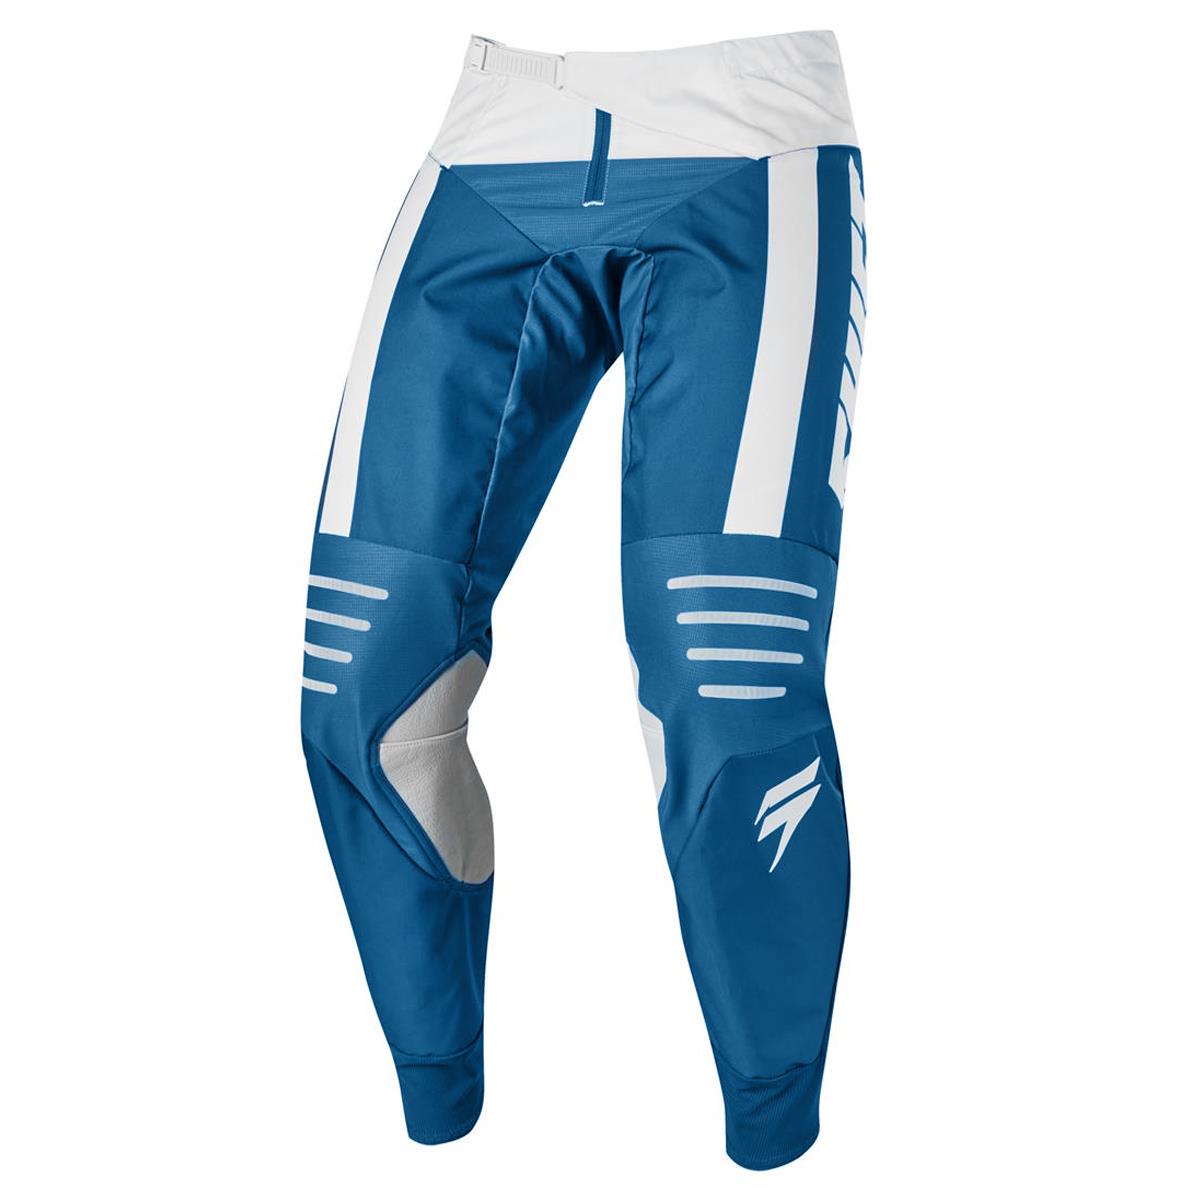 Shift Pantalon MX 3lack Label Strike Blue